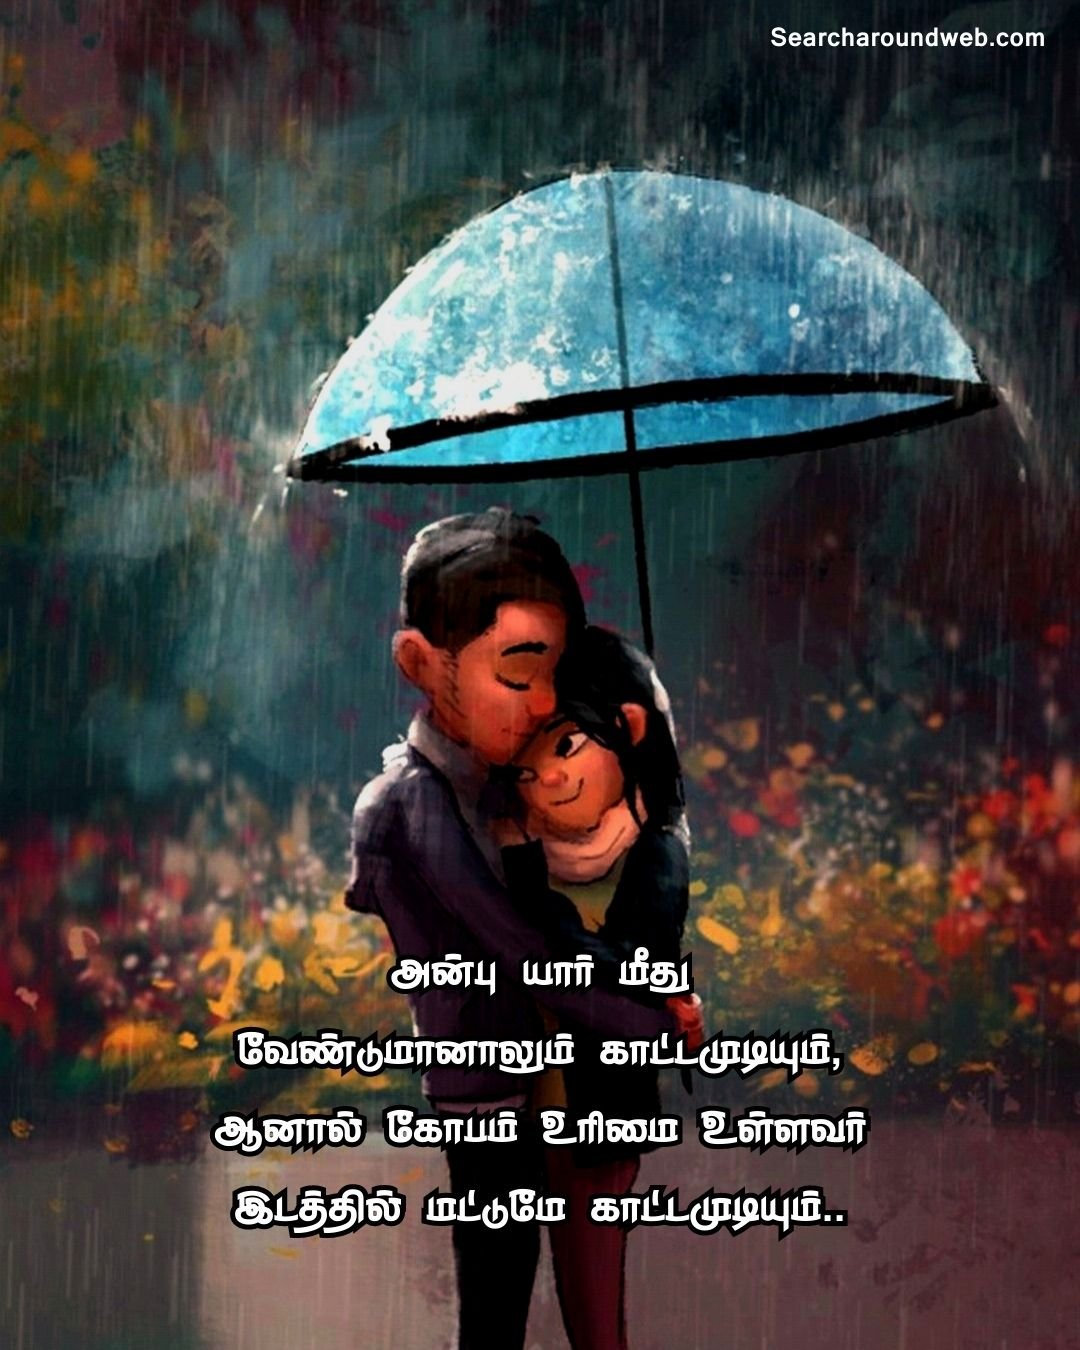 மனதை கவரும் காதல் கவிதைகள்! | Love Quotes in Tamil 